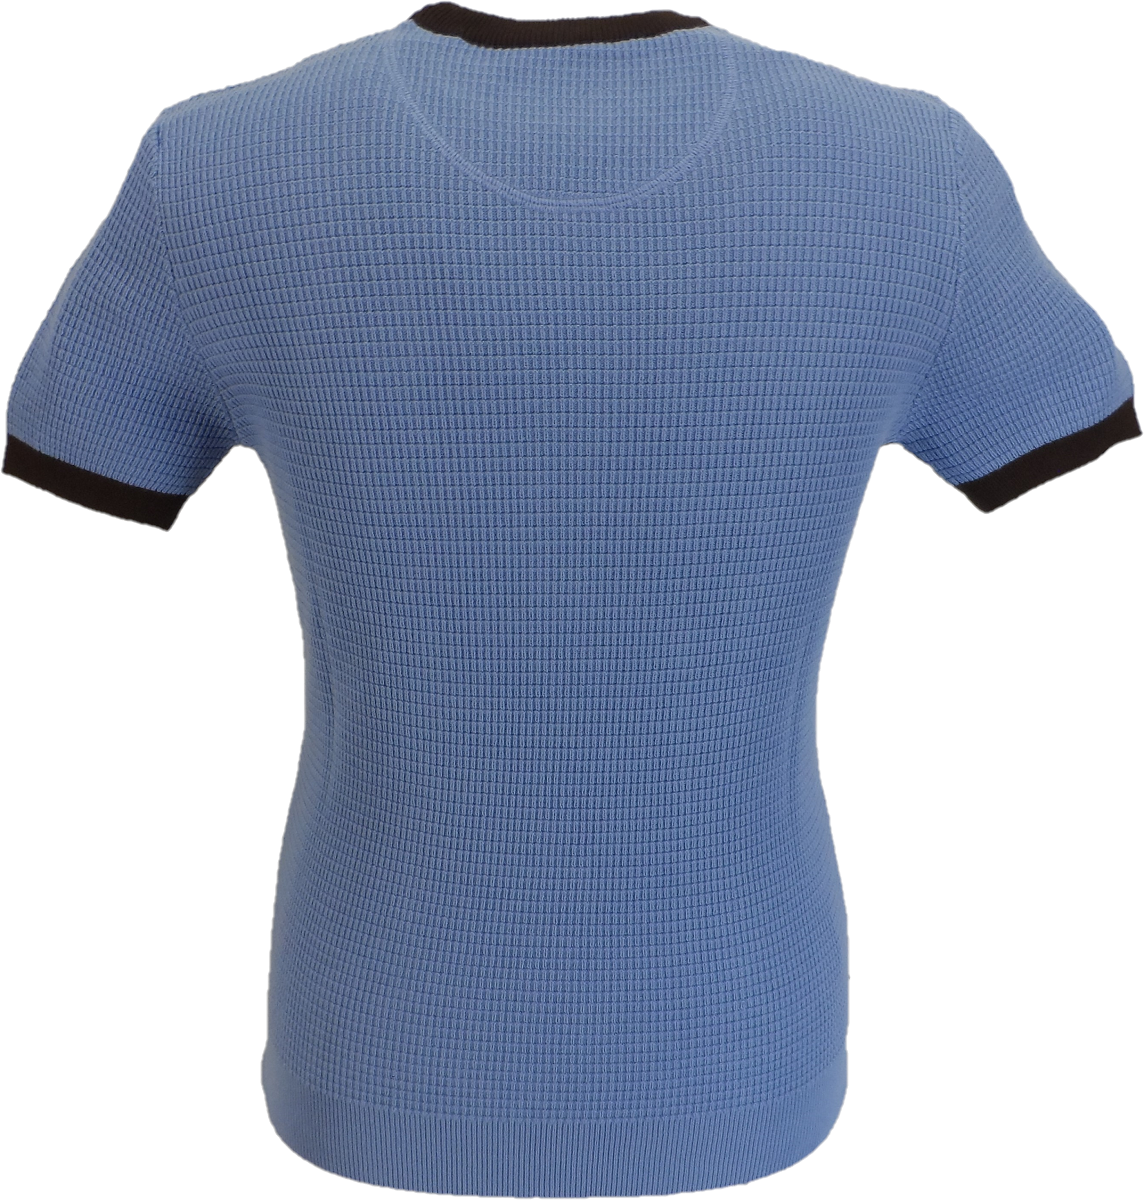 Camiseta tipo jersey tipo gofre con rayas en azul cielo para hombre de Ska & Soul